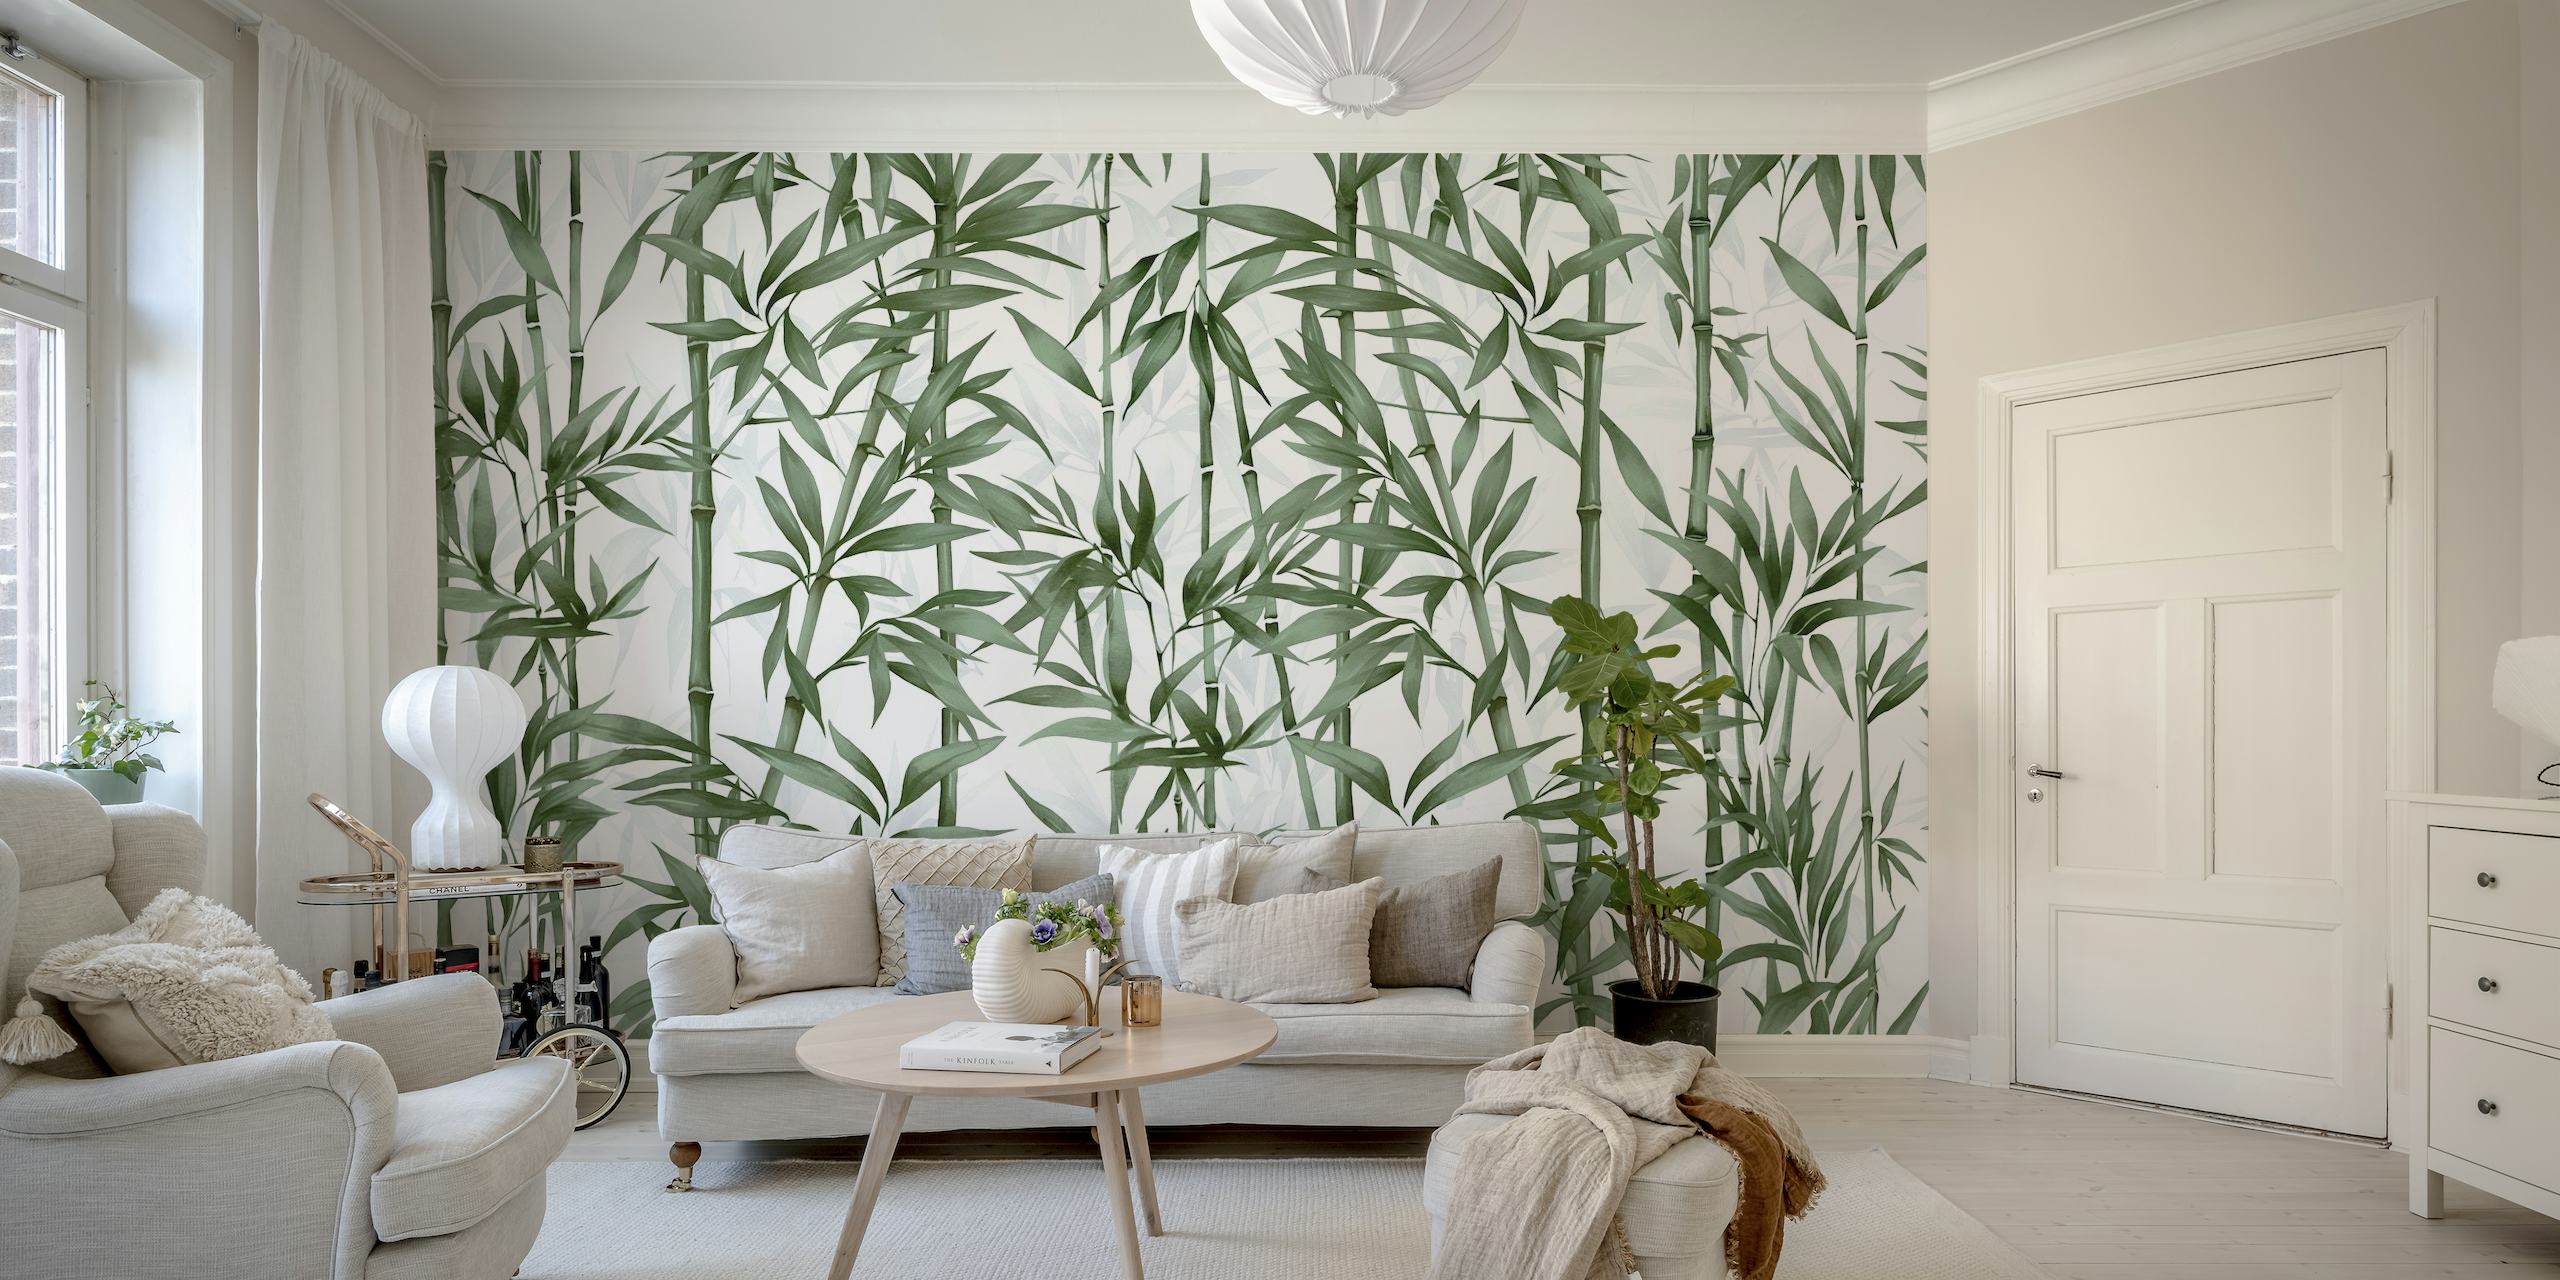 Fotomural vinílico de parede com hastes de bambu verde para decoração de interiores tranquila